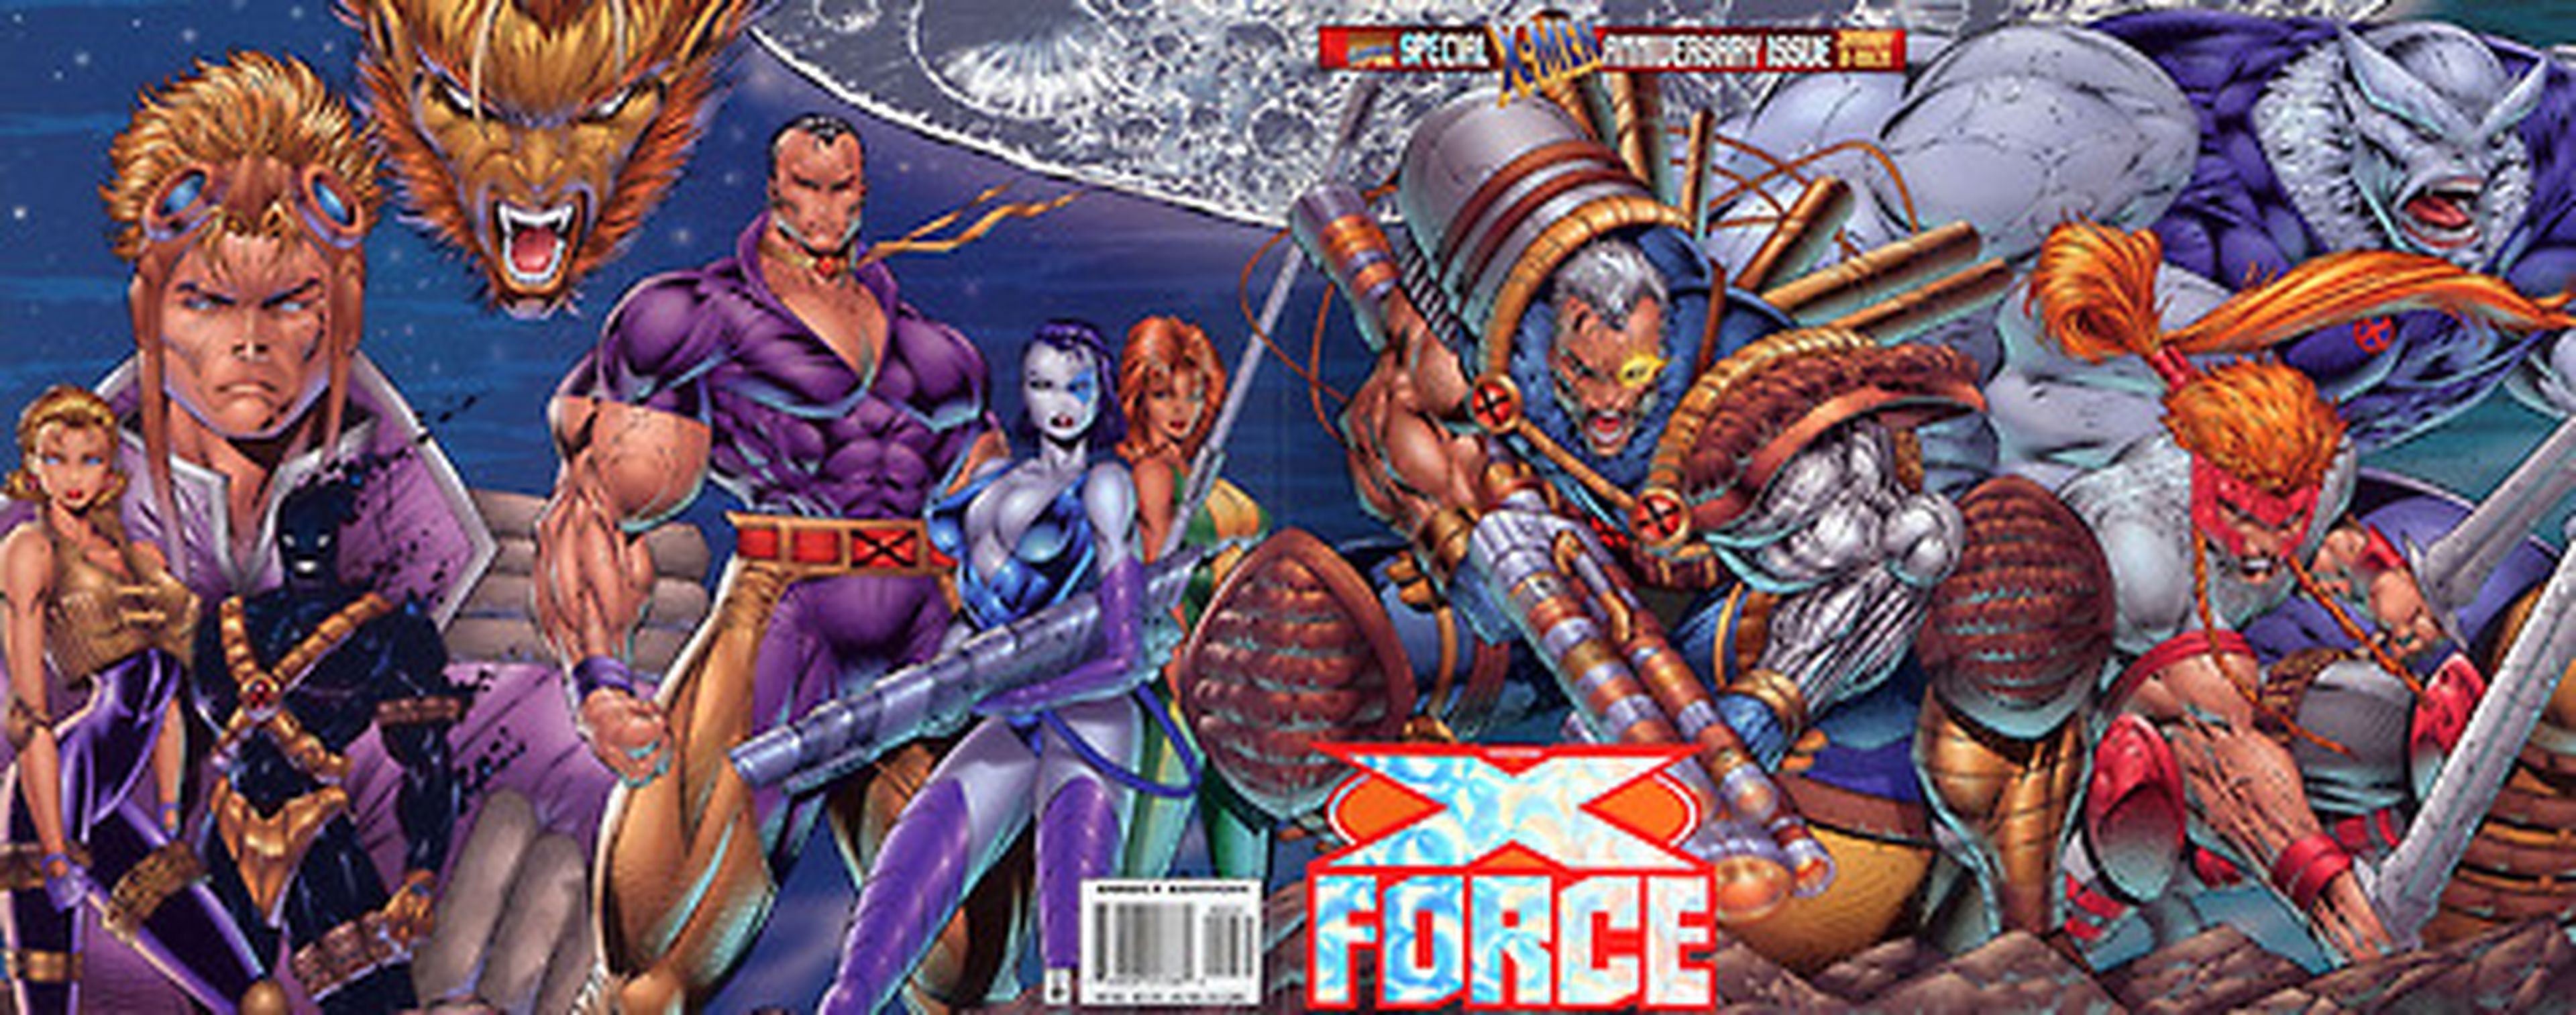 Película de X-Force a la vista